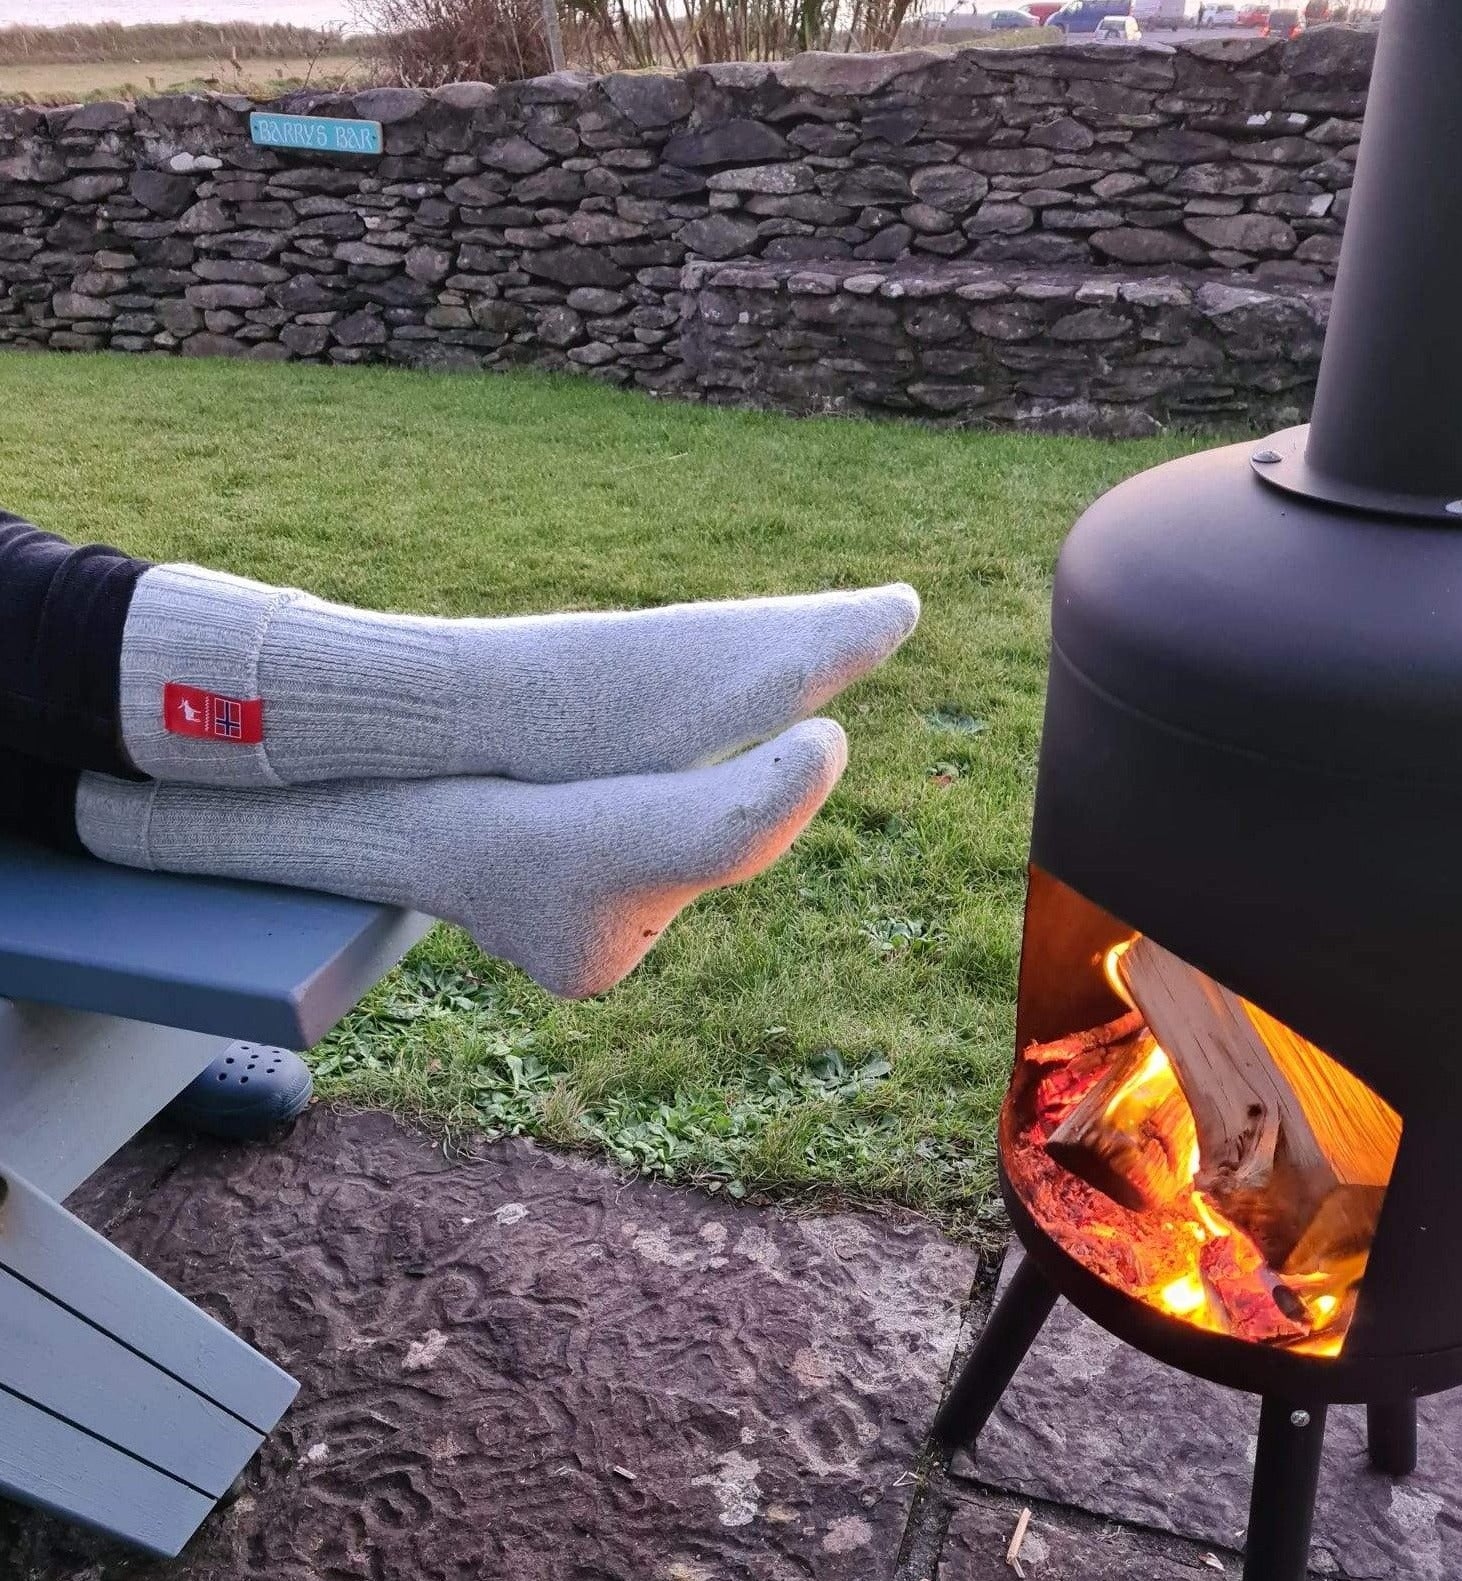 Best Warm Socks for Men & Women [Best for Cold Feet] - Nordic Socks US